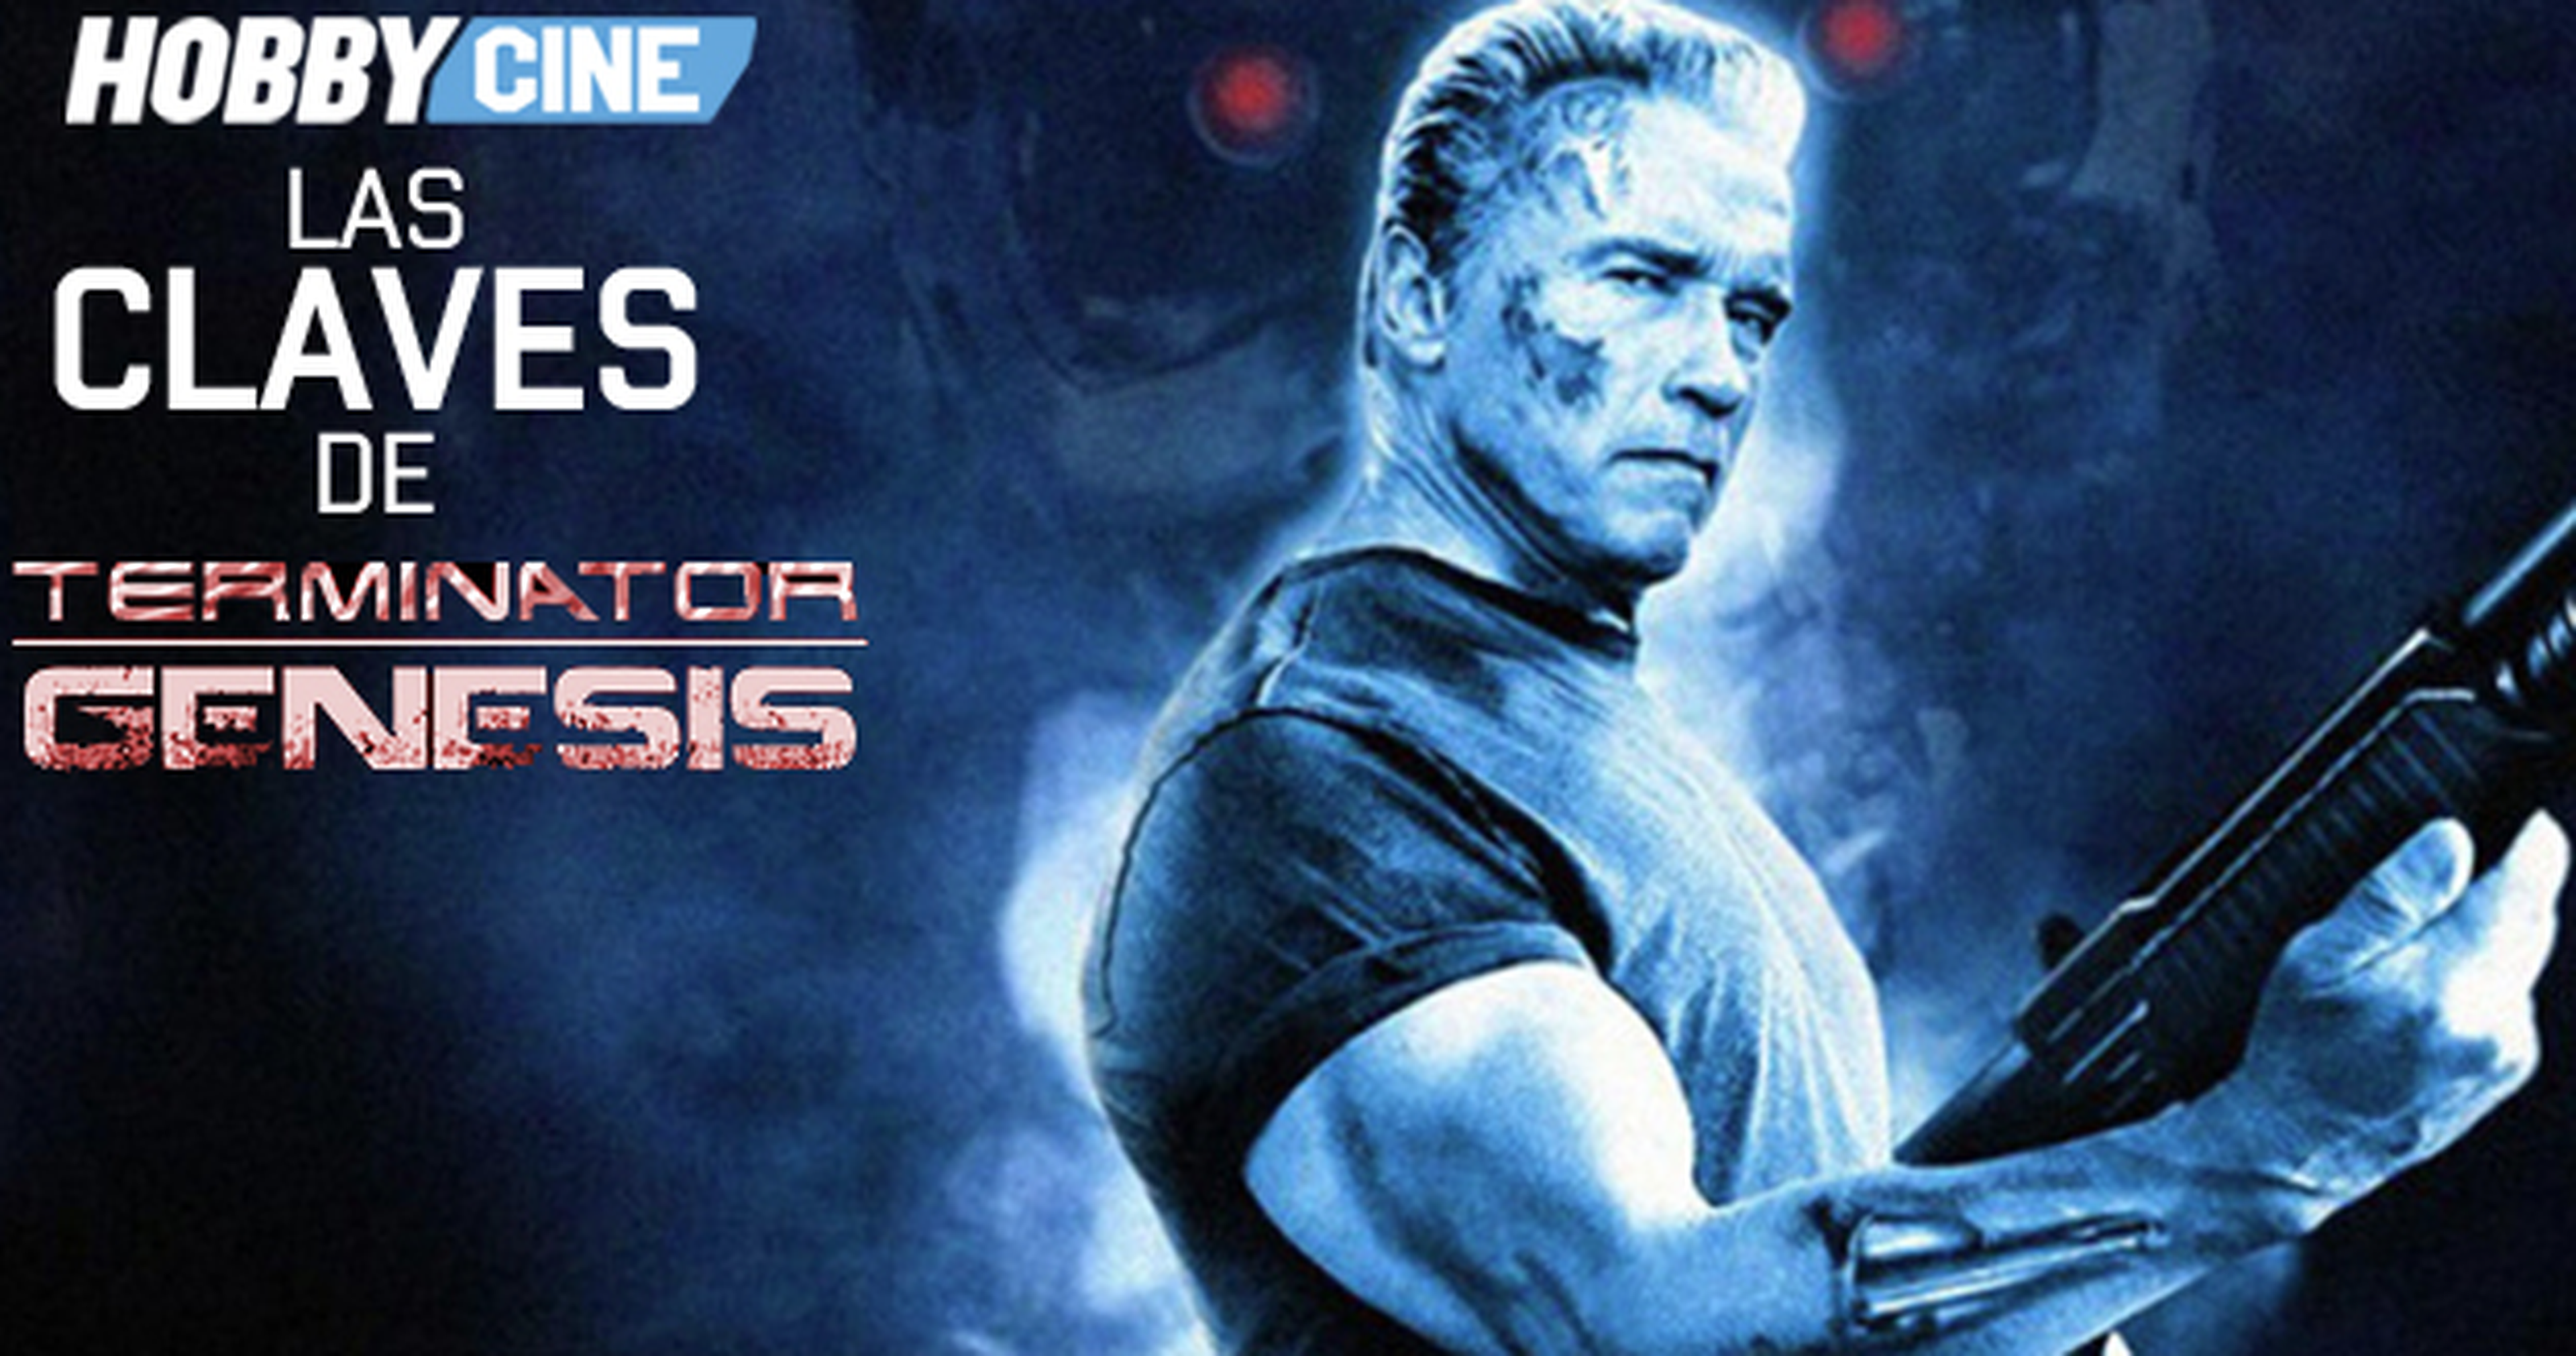 Hobbycine: Las claves de Terminator Genesis